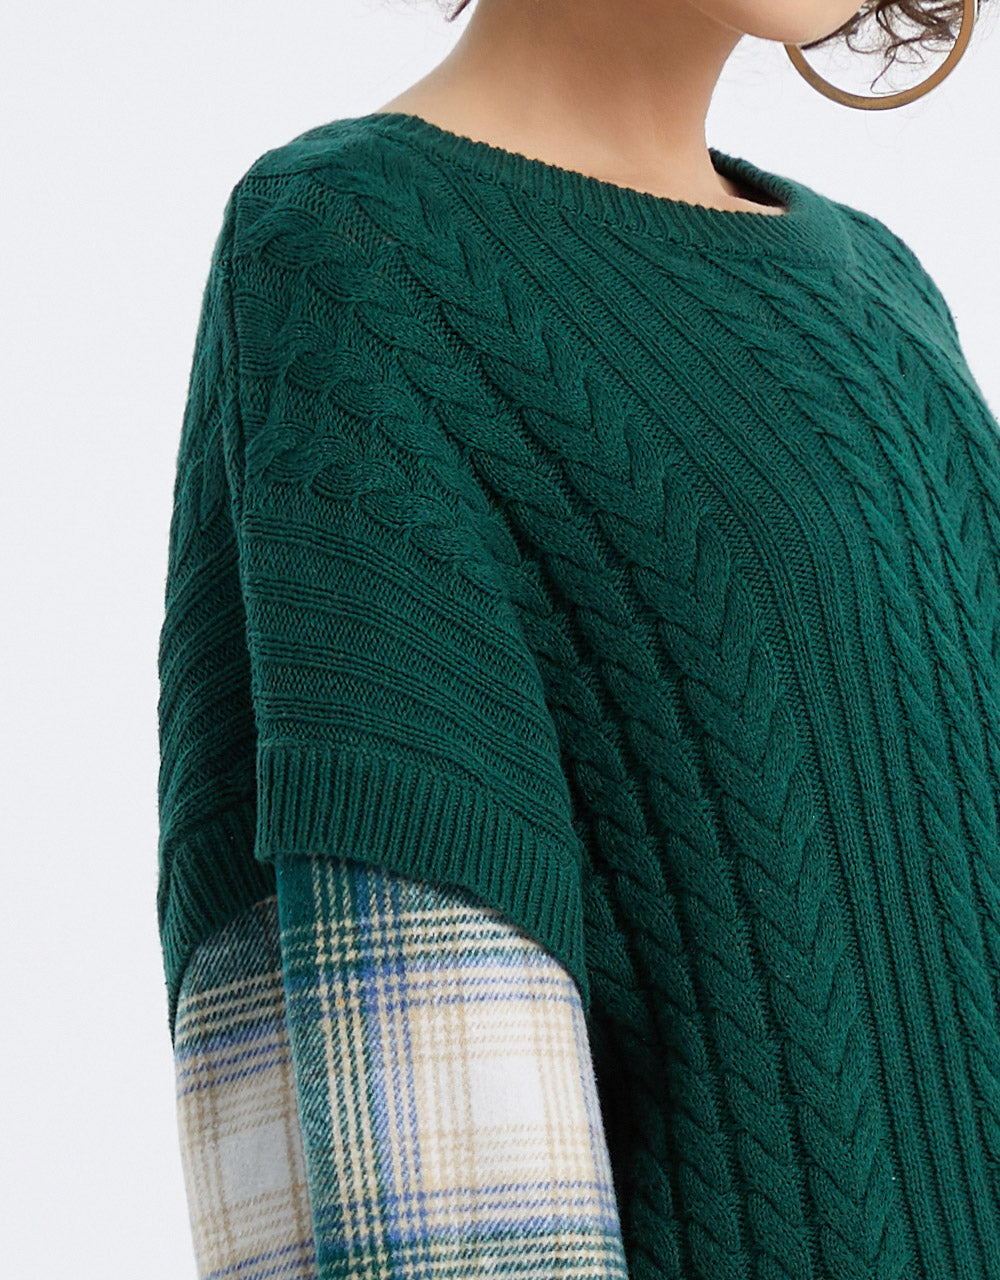 체크 무늬 패턴 소매 스플라이스 스웨터 드레스